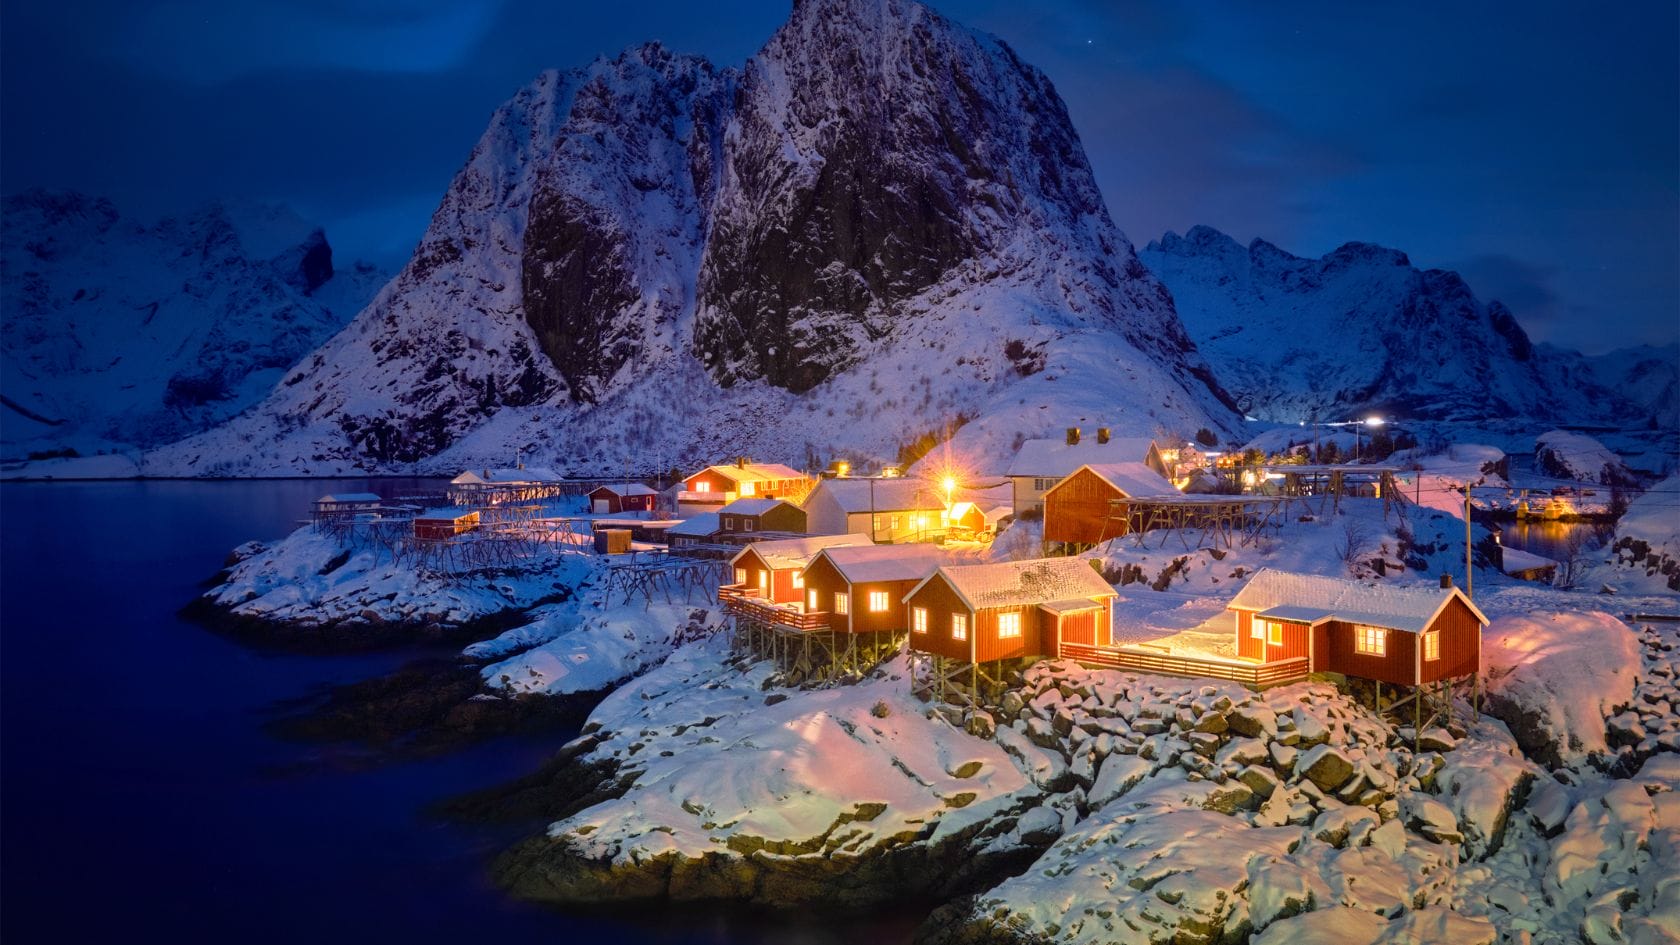 Norja haluaa suitsia Bitcoin-louhintaa. Kuvassa Hamnoyn kylä Lofooteilla Pohjois-Norjassa. Kryptojen louhinta kuluttaa lähes yhtä paljon sähköä kuin koko Lofoottien piirikunta, jossa arvioidaan asuvan 24 500 asukasta.